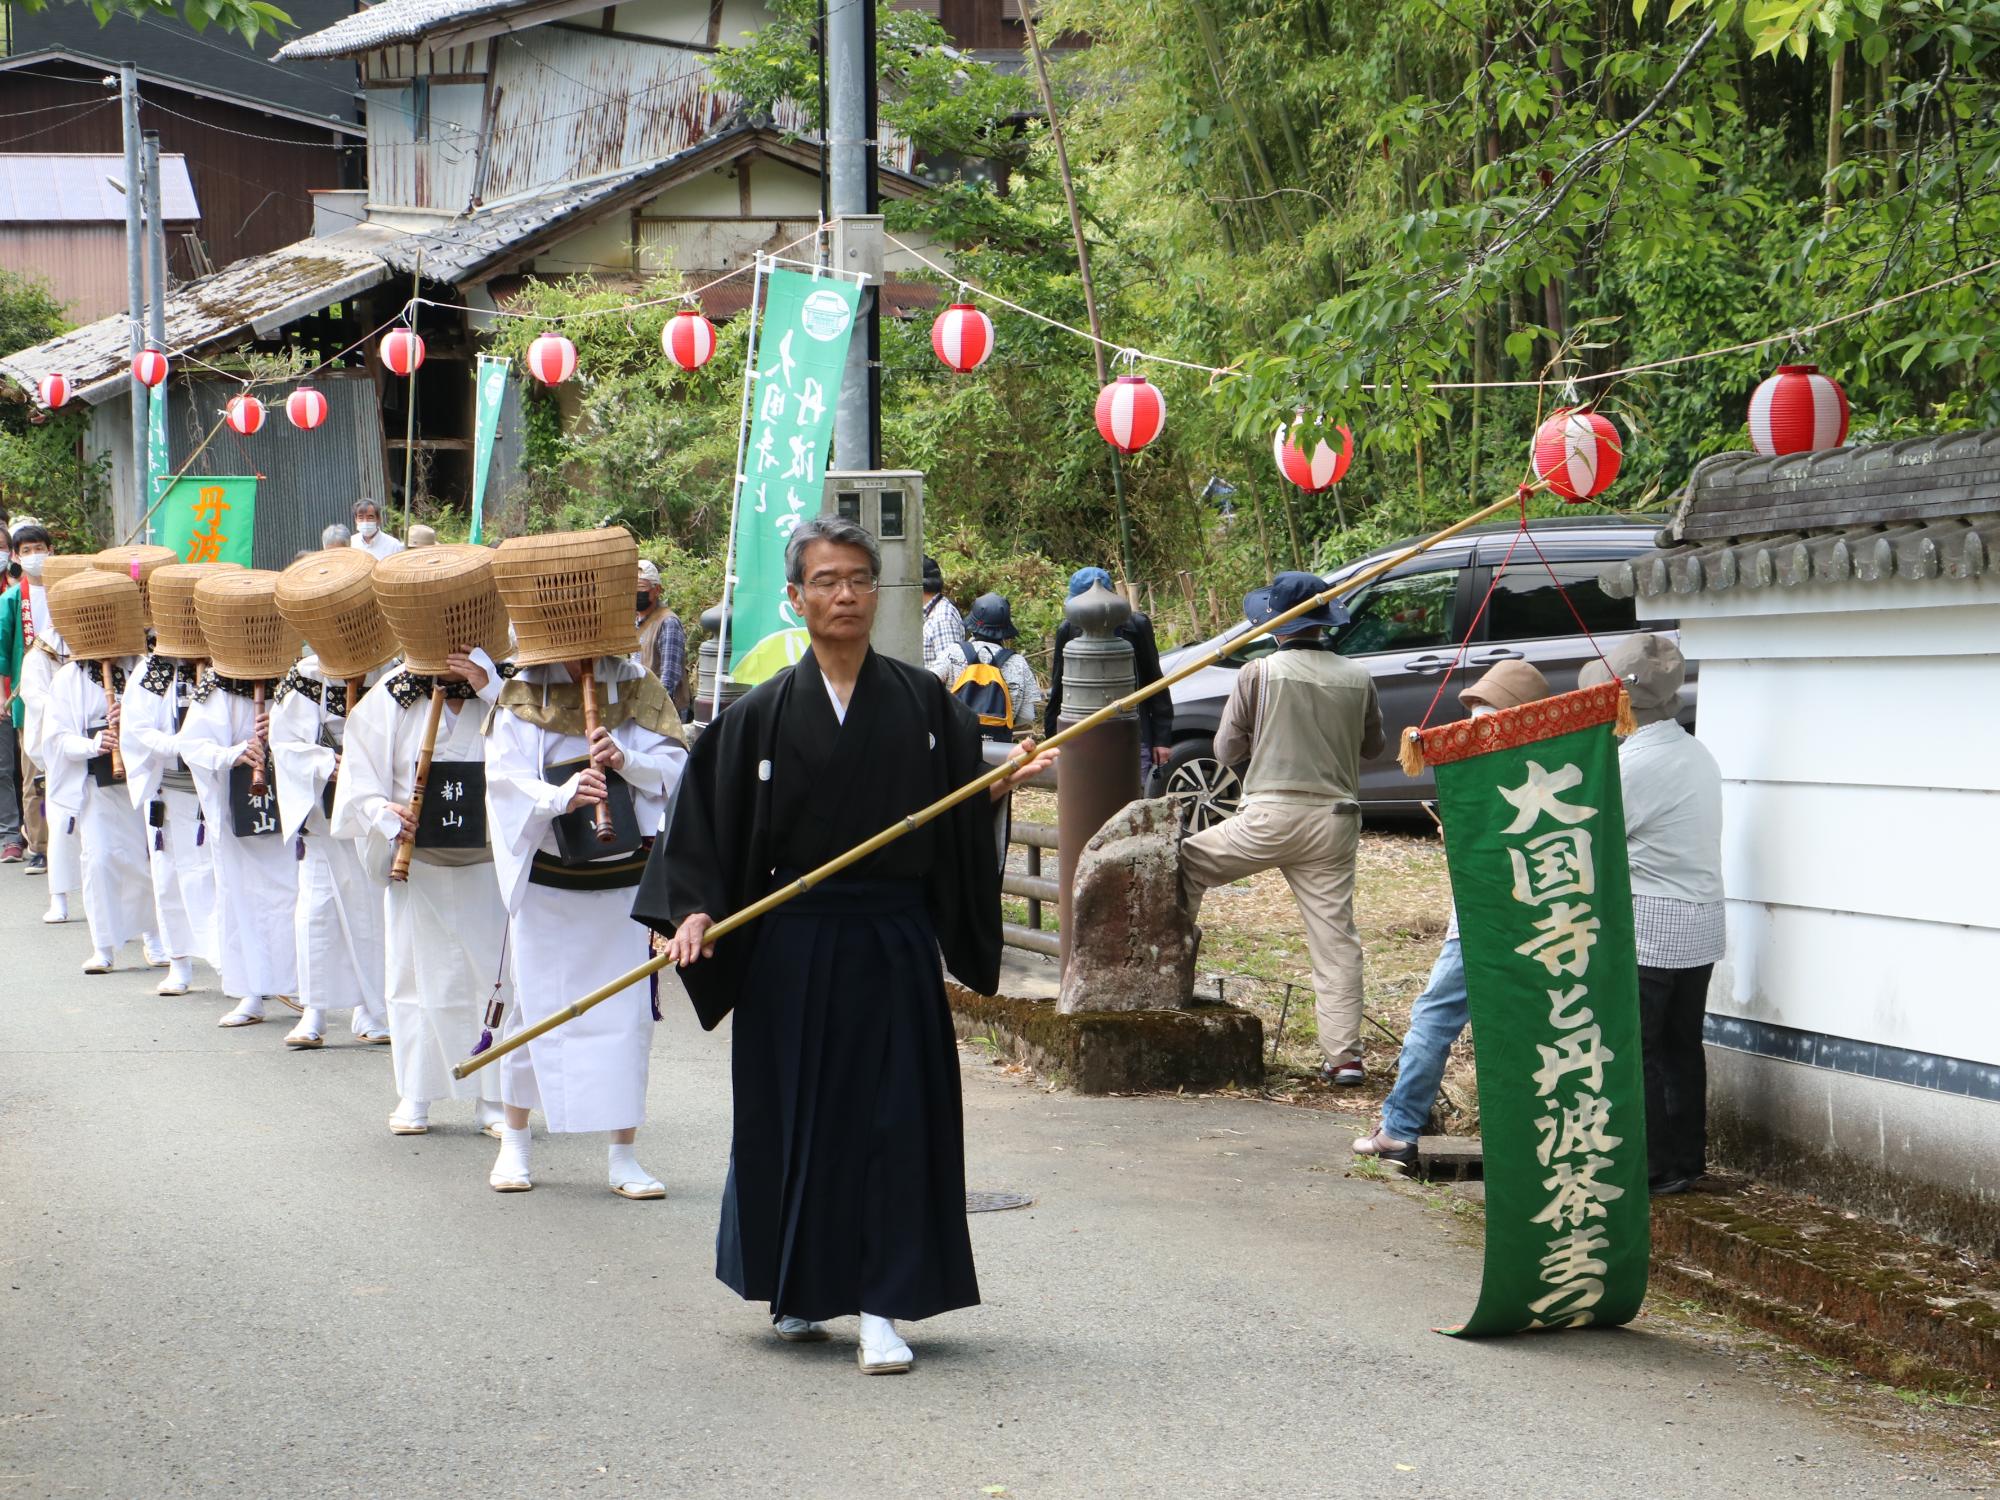 黒い着物を着て「大国寺と丹波茶まつり」というのぼりを持った男性を先頭に、傘をかぶって尺八を演奏されている方たちが練り歩いている